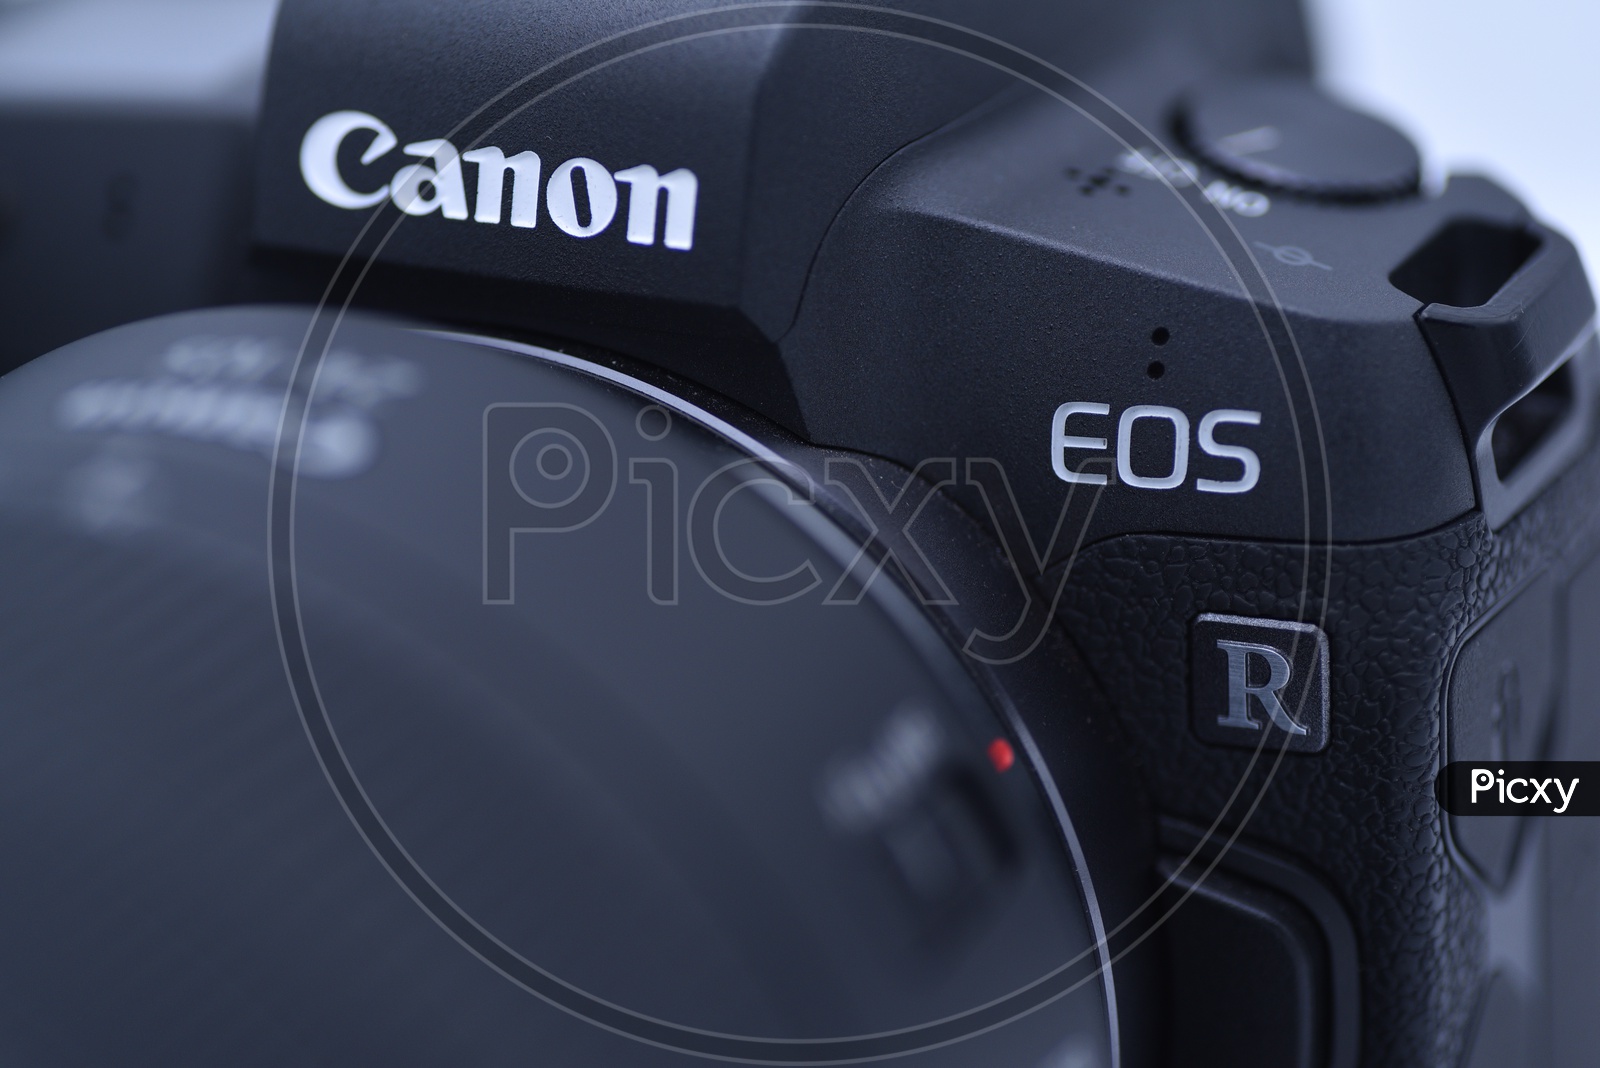 Cannon EOS R DSLR Camera